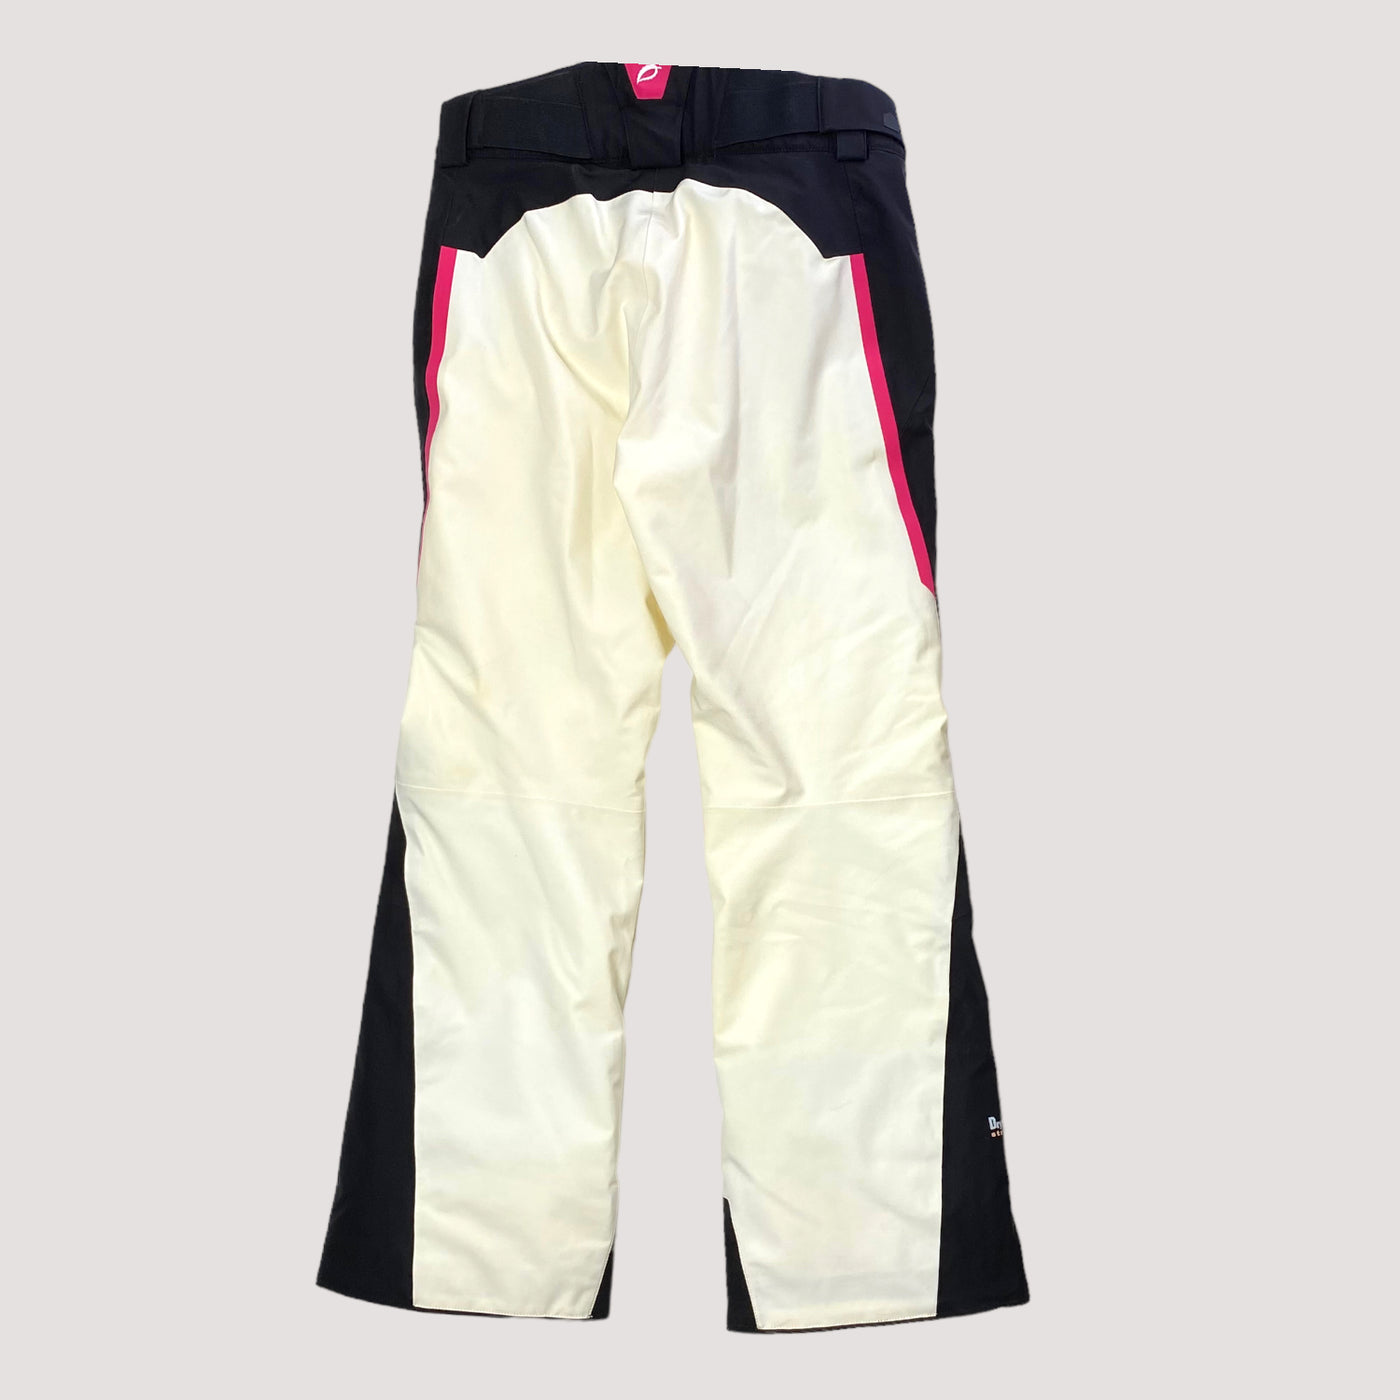 Halti drymaxX ski pants, black/white | woman 36